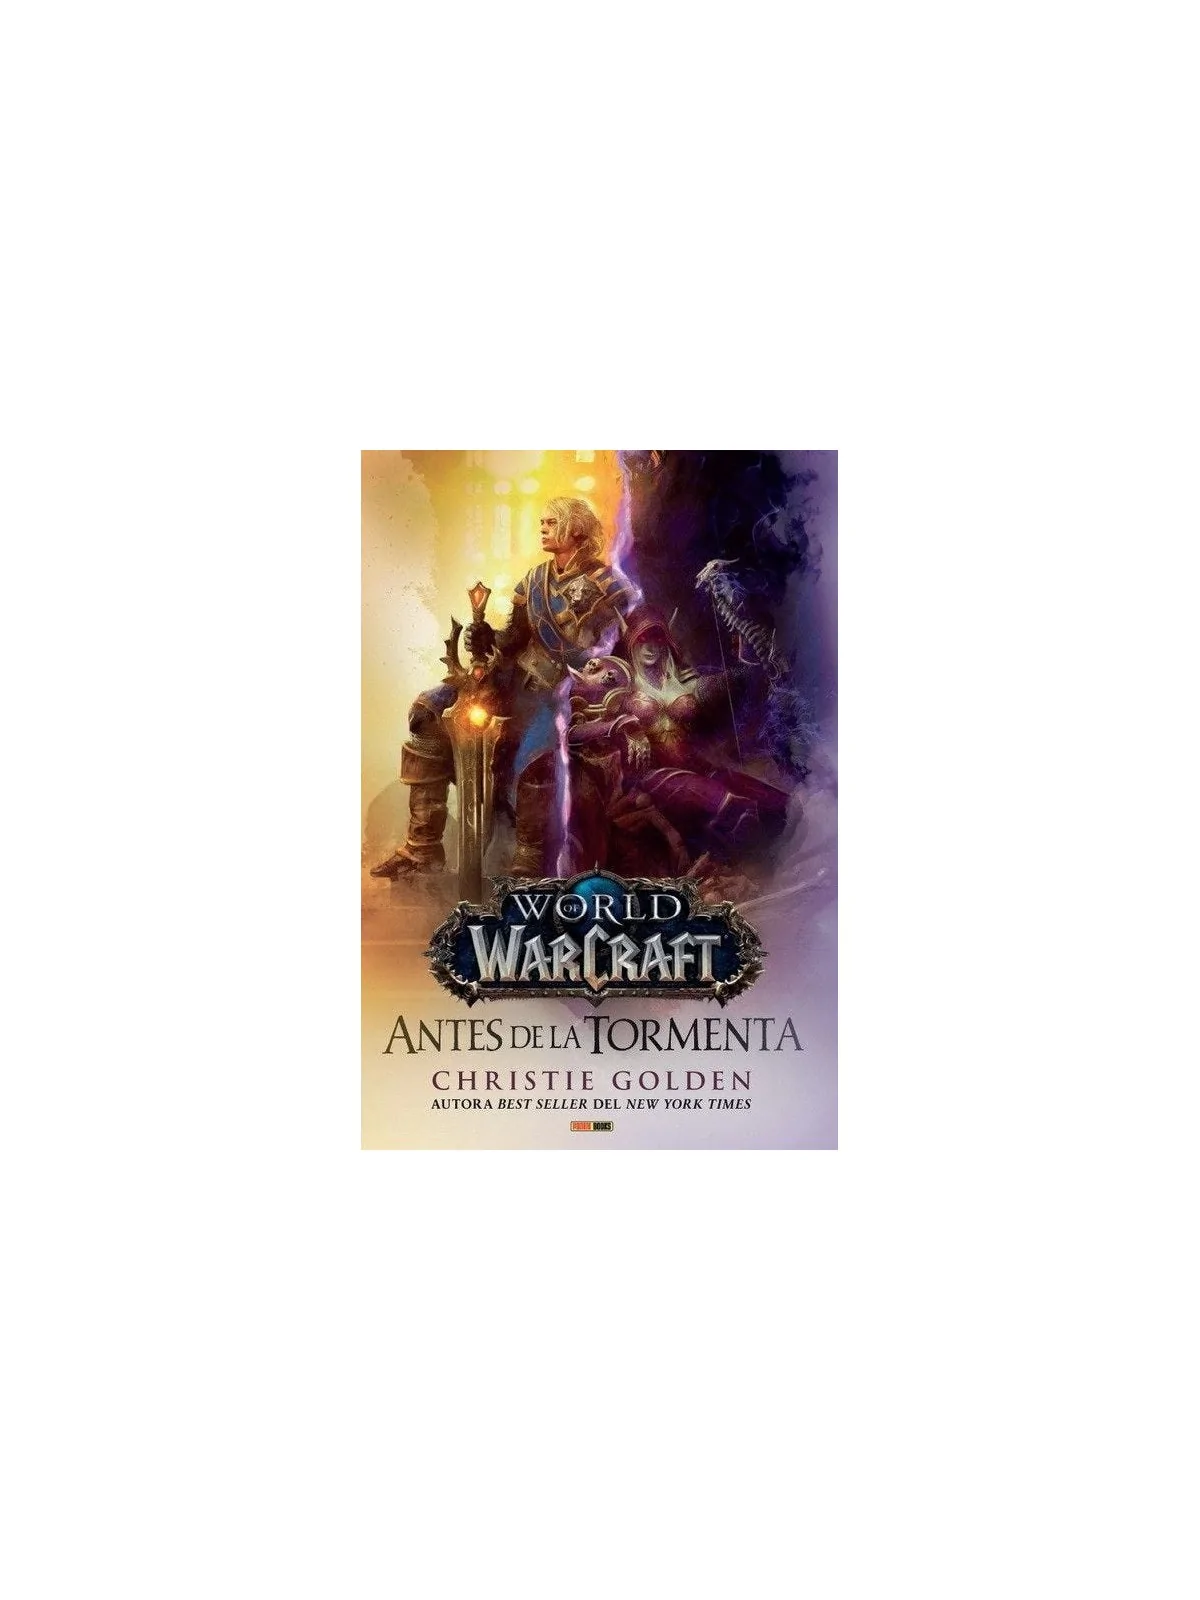 Comprar World of Warcraft: Antes de la Tormenta barato al mejor precio